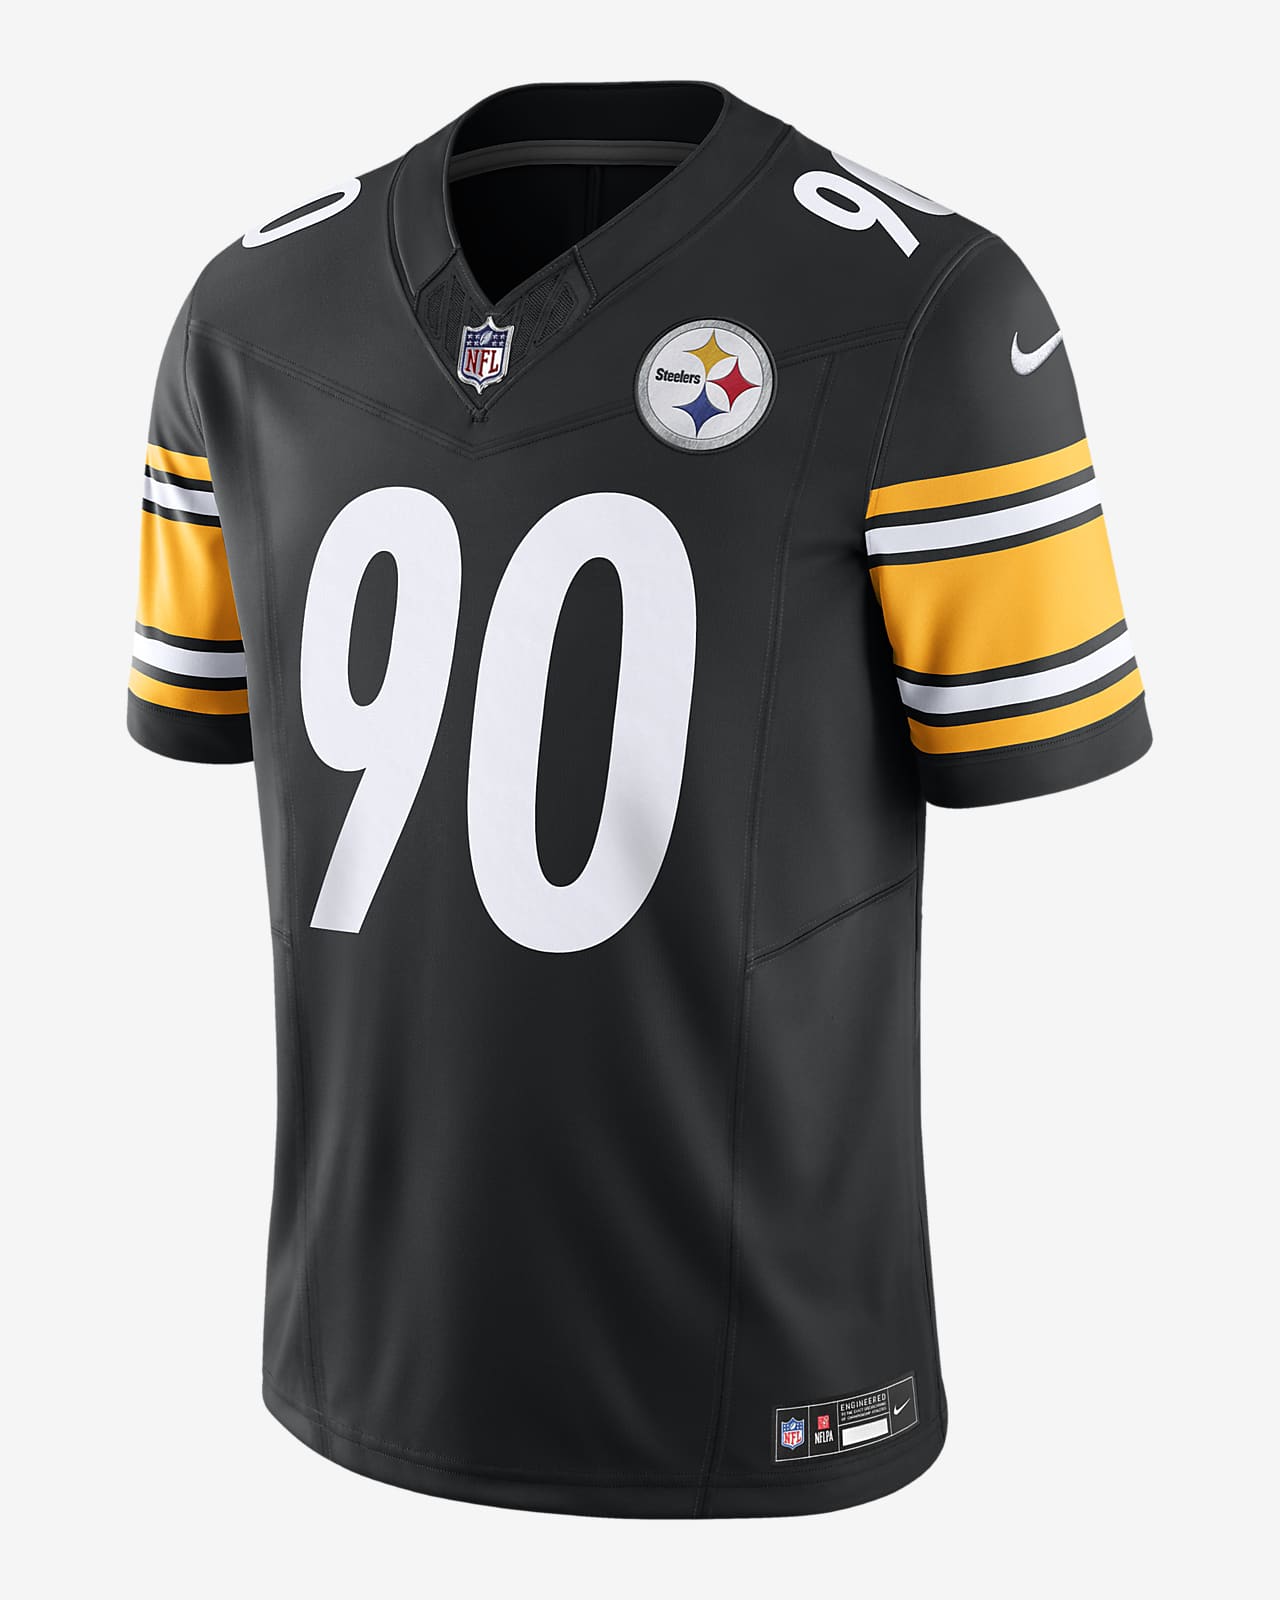 T.J. Jersey de fútbol americano Nike Dri-FIT de la NFL Limited para hombre T.J. Watt Pittsburgh Steelers